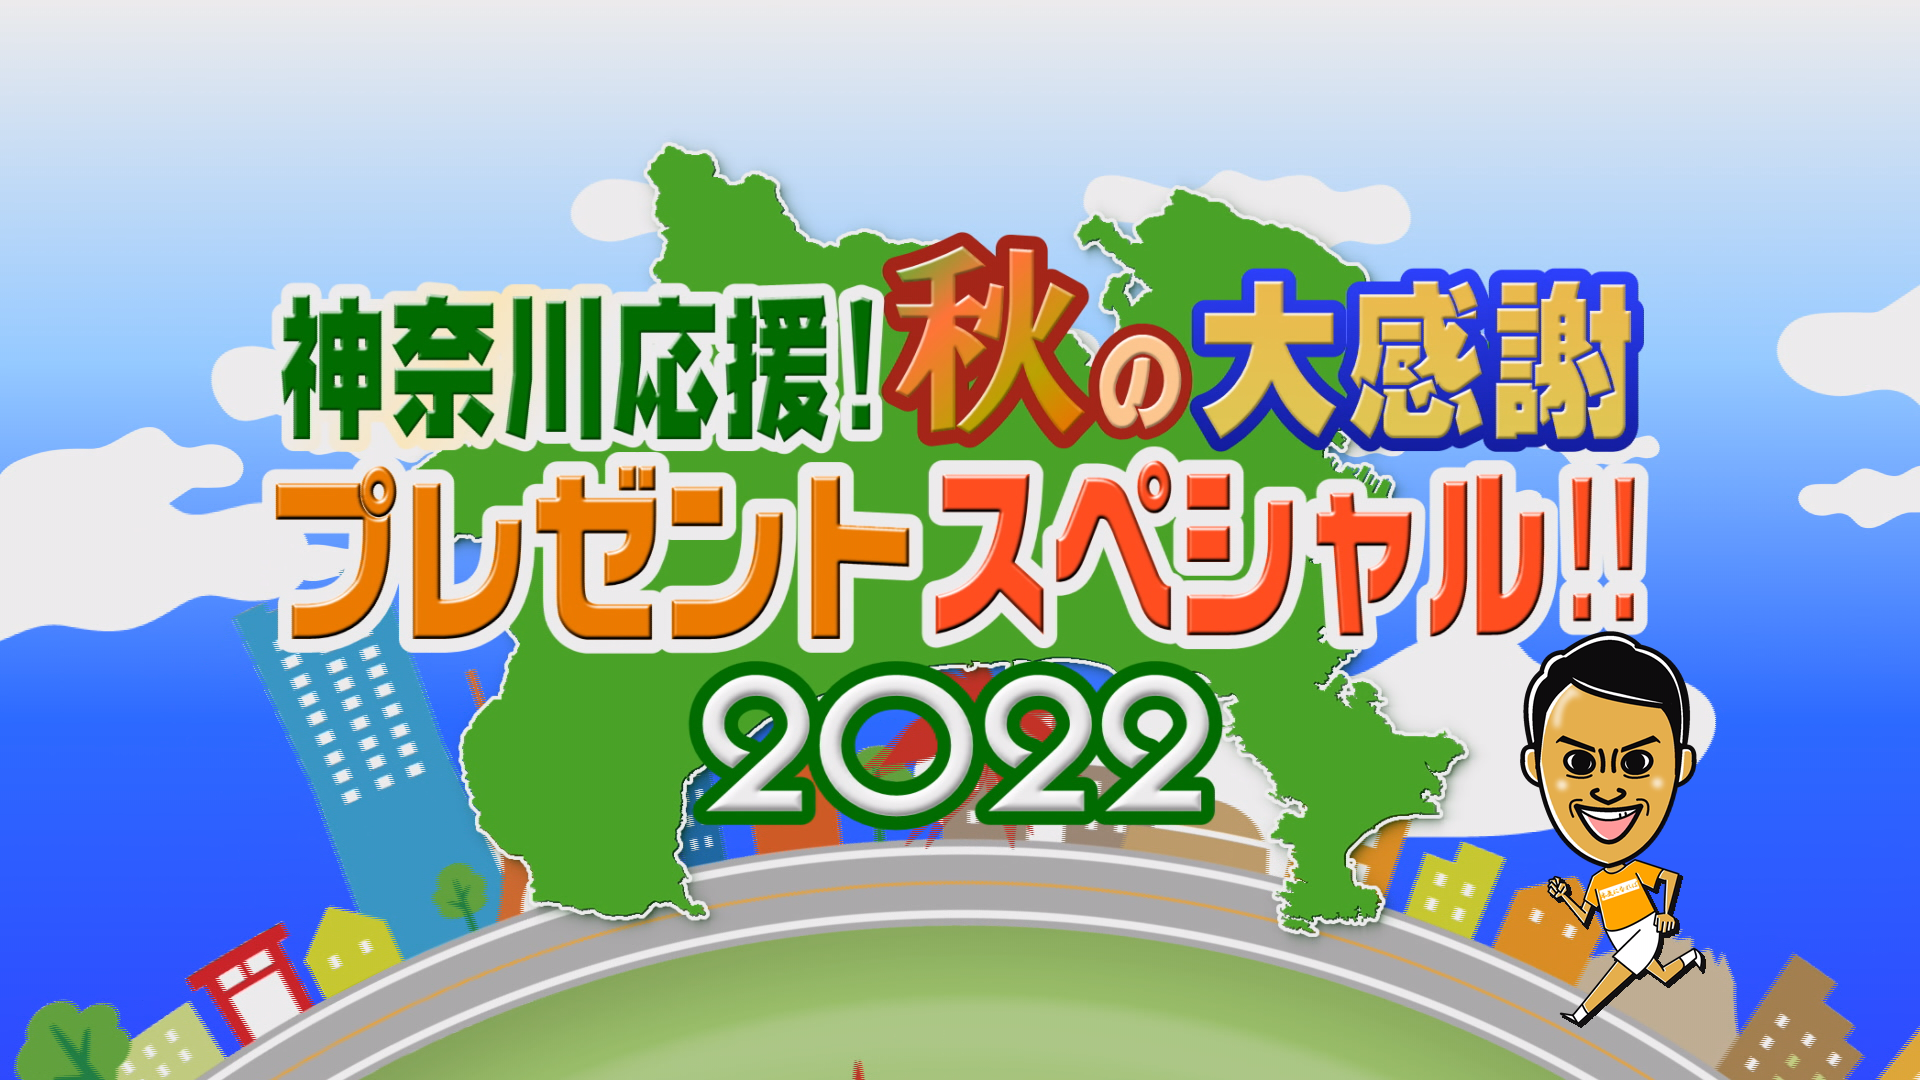 「神奈川応援！秋の大感謝プレゼントスペシャル‼2022」